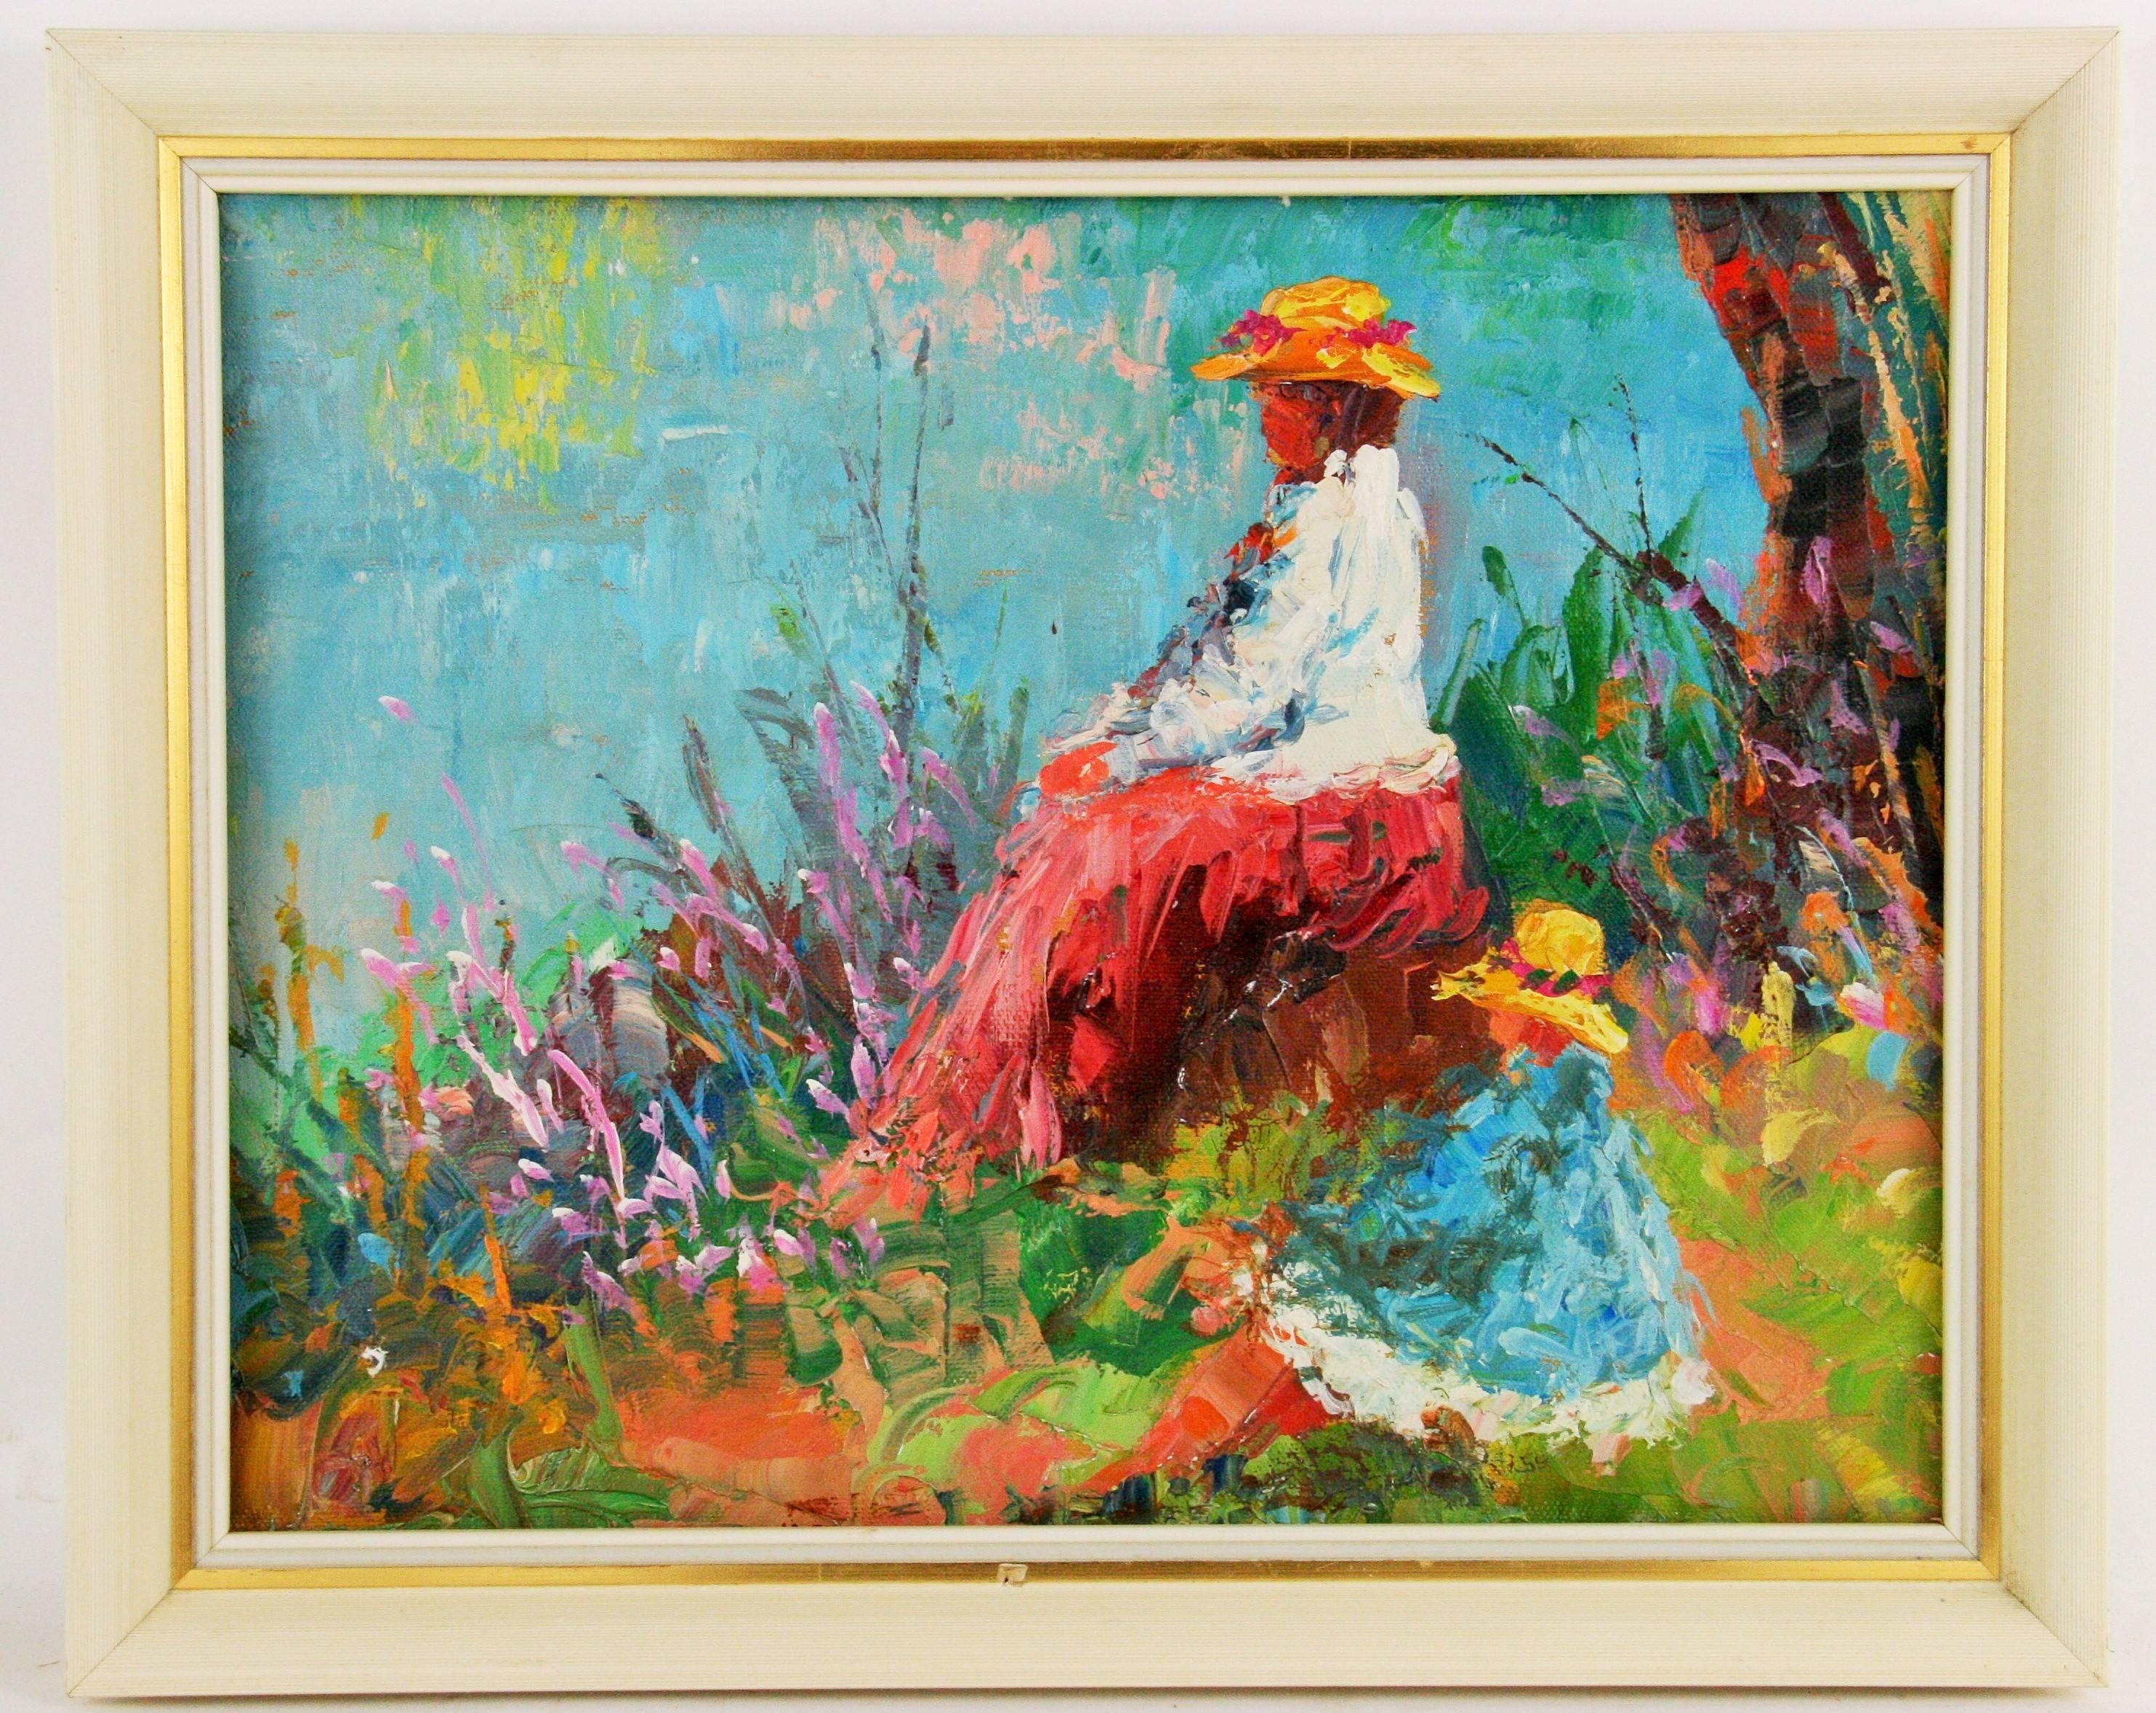 #5-2858 Une mère et son enfant, palette figurative de style impressionniste, huile sur toile appliquée sur carton, présentée dans un cadre en bois, artiste inconnu, dimensions de l'image 10,5 H x 13,5 L